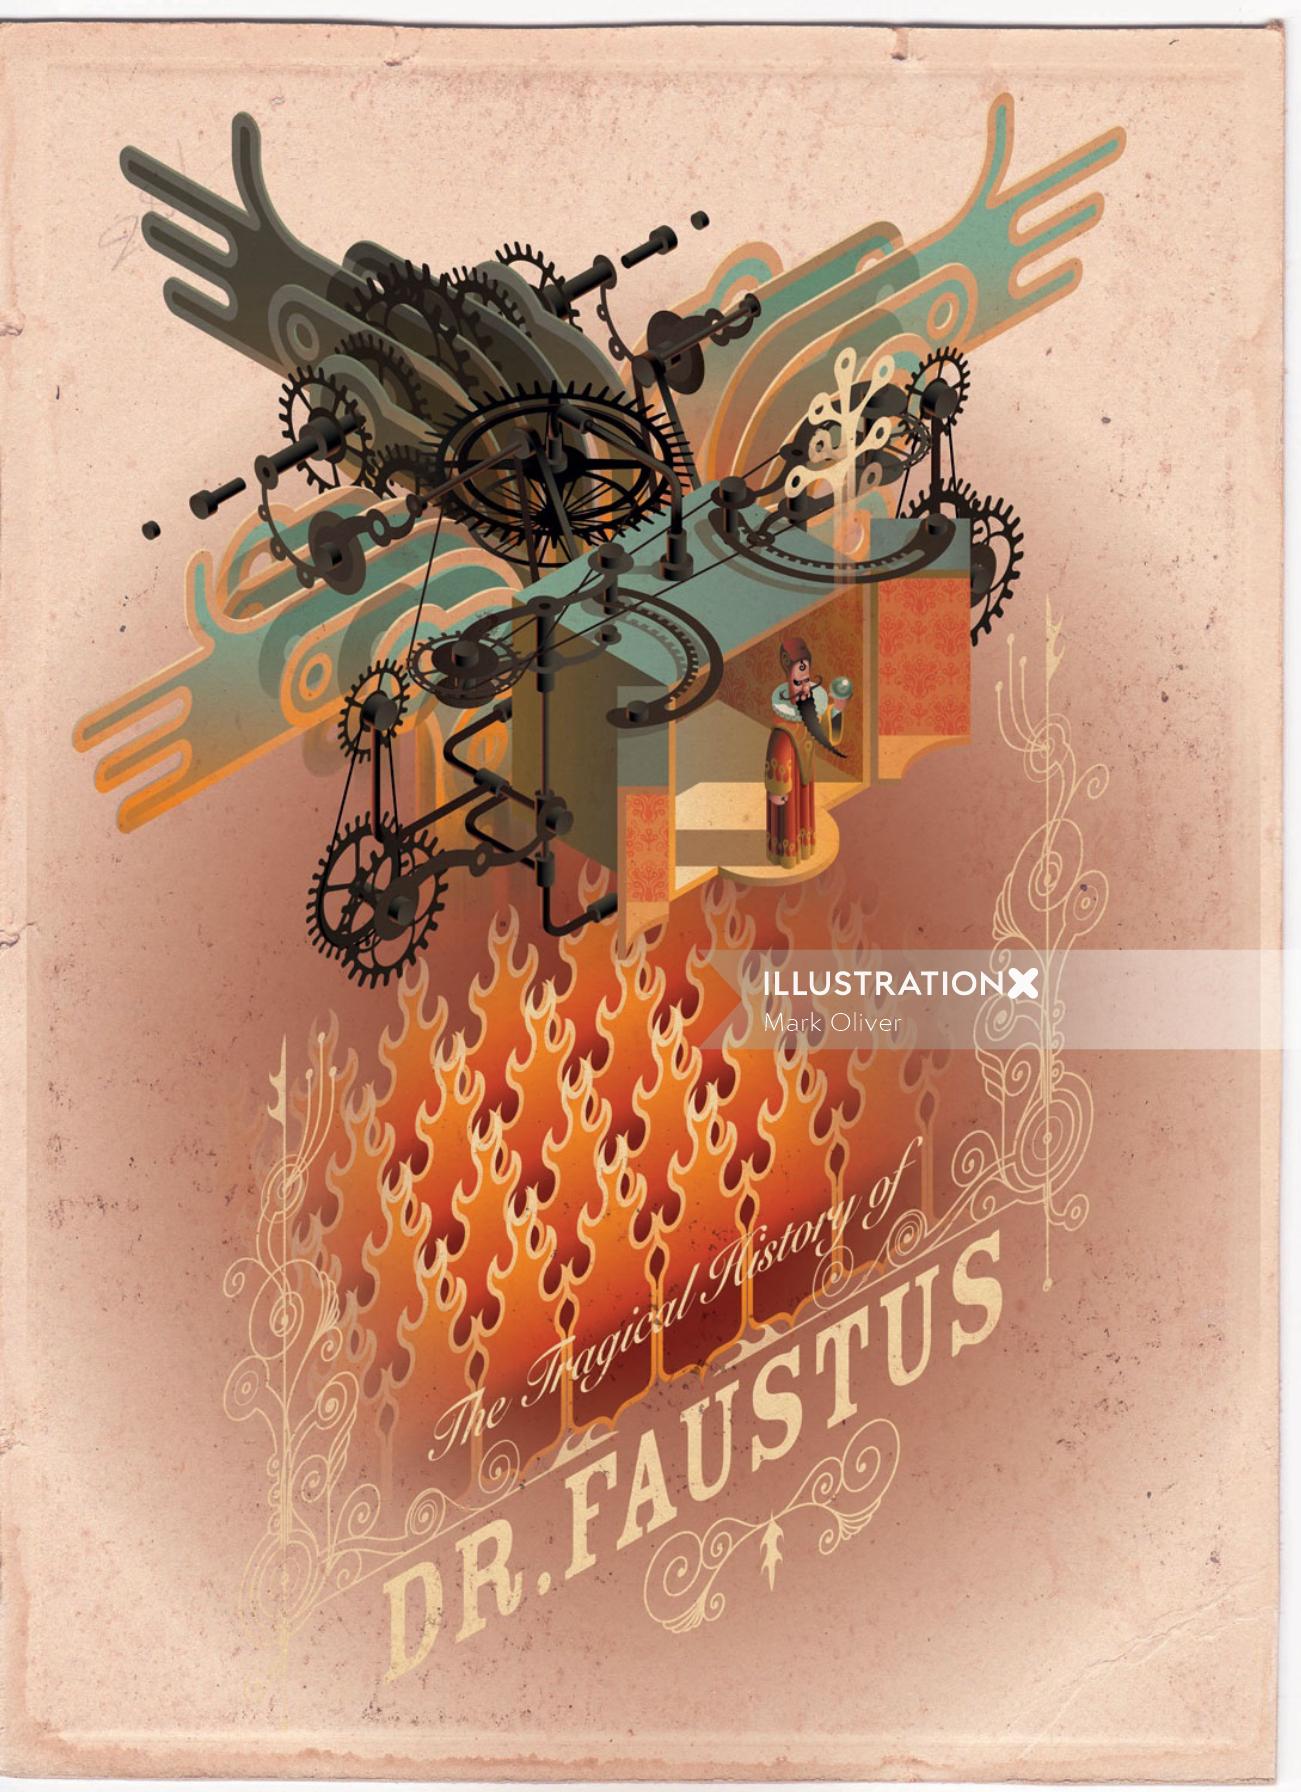 Dr. Faustus arte técnico